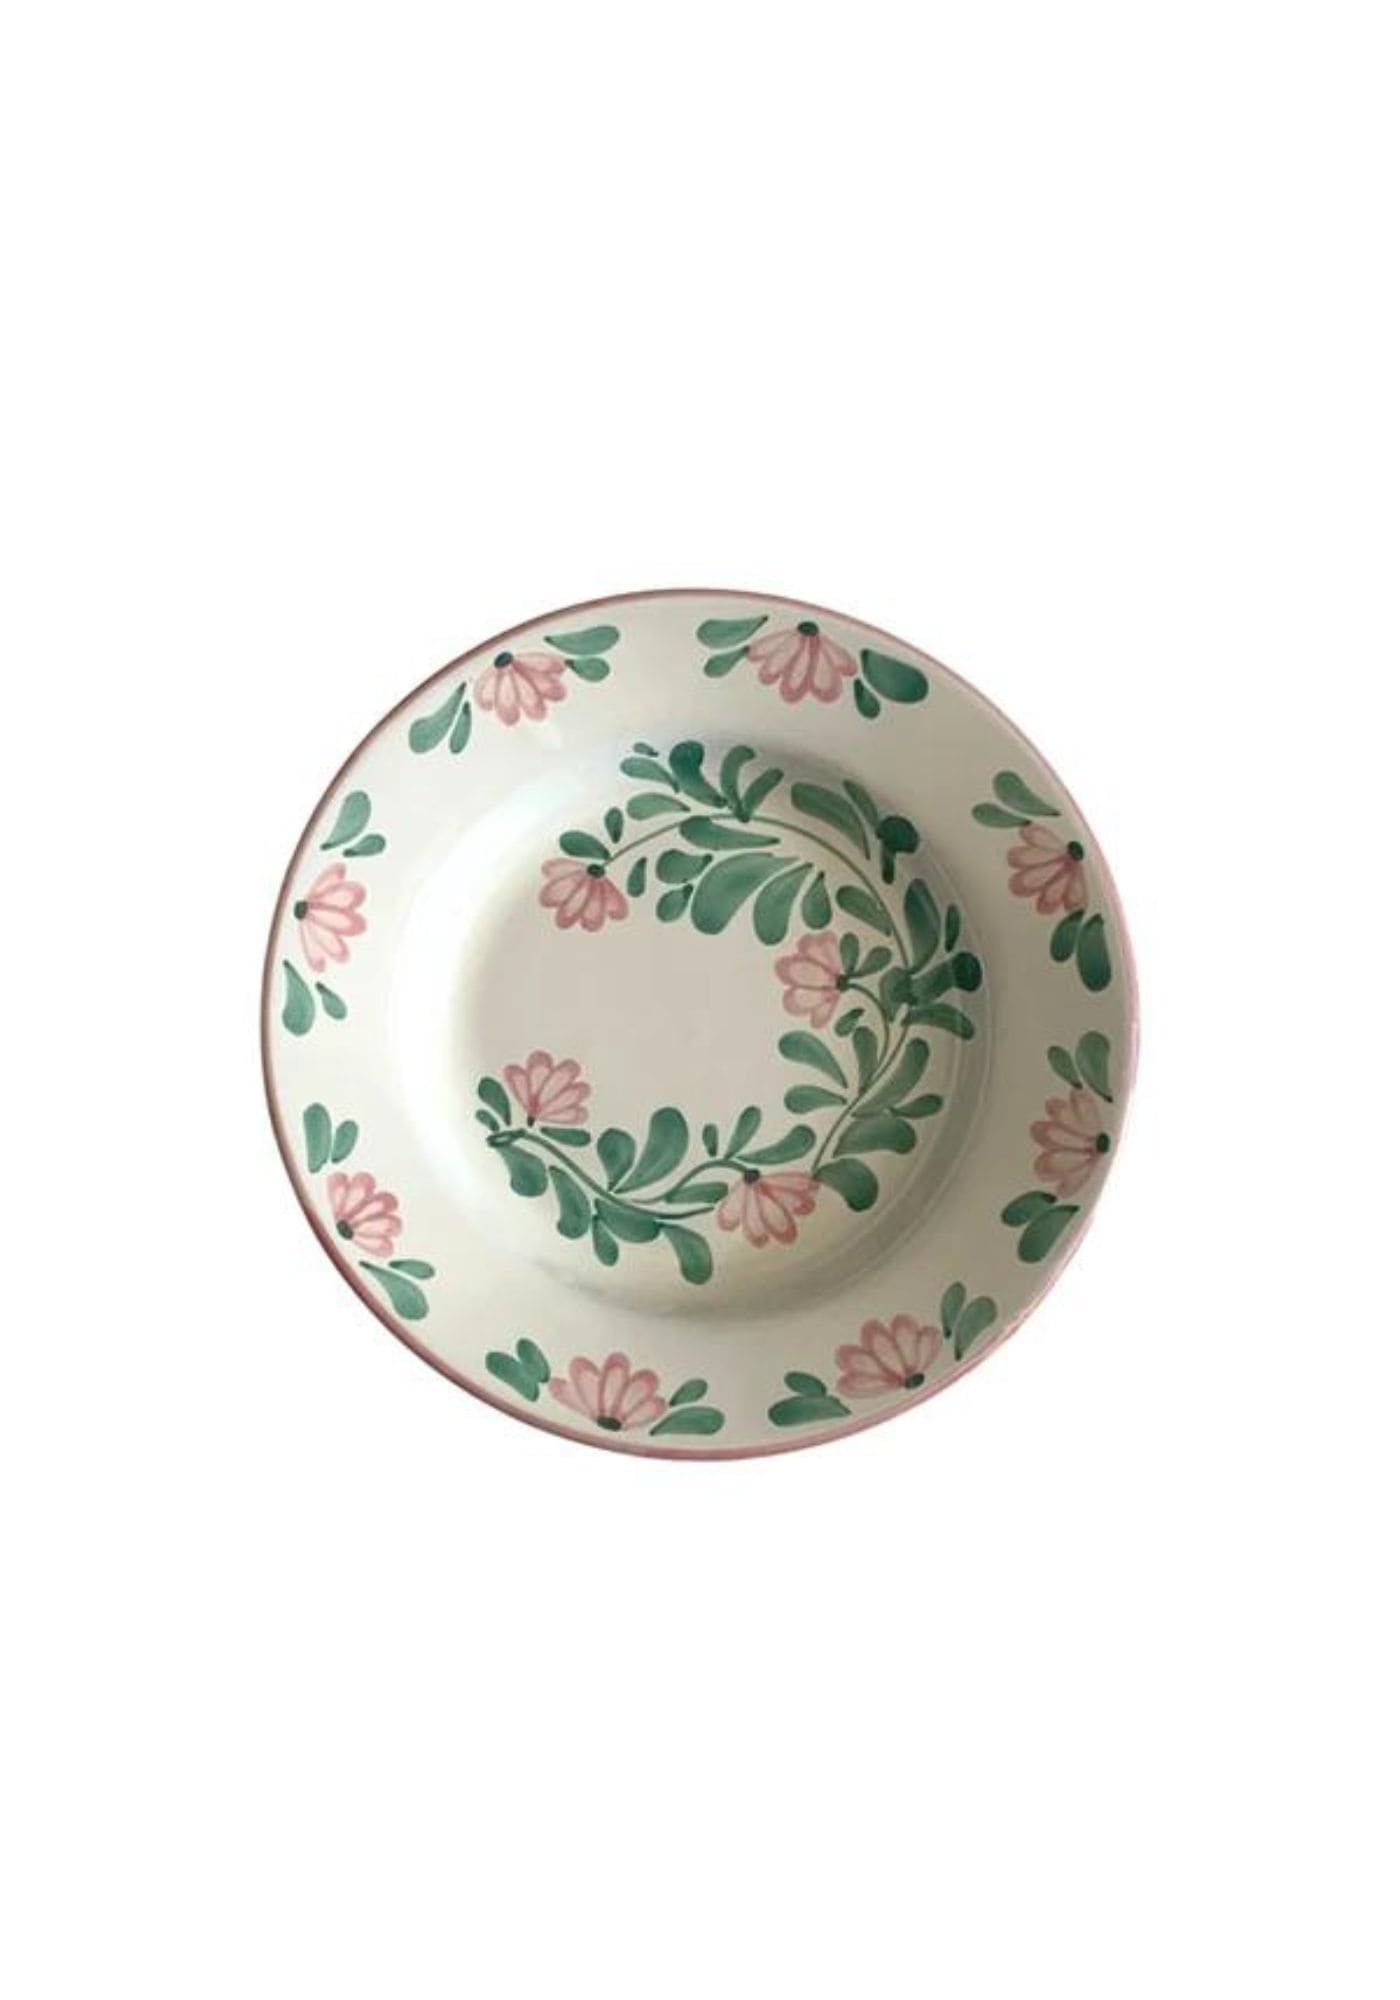 Assiette creuse en céramique Molleni motifs fleurs roses claires sur fond blanc